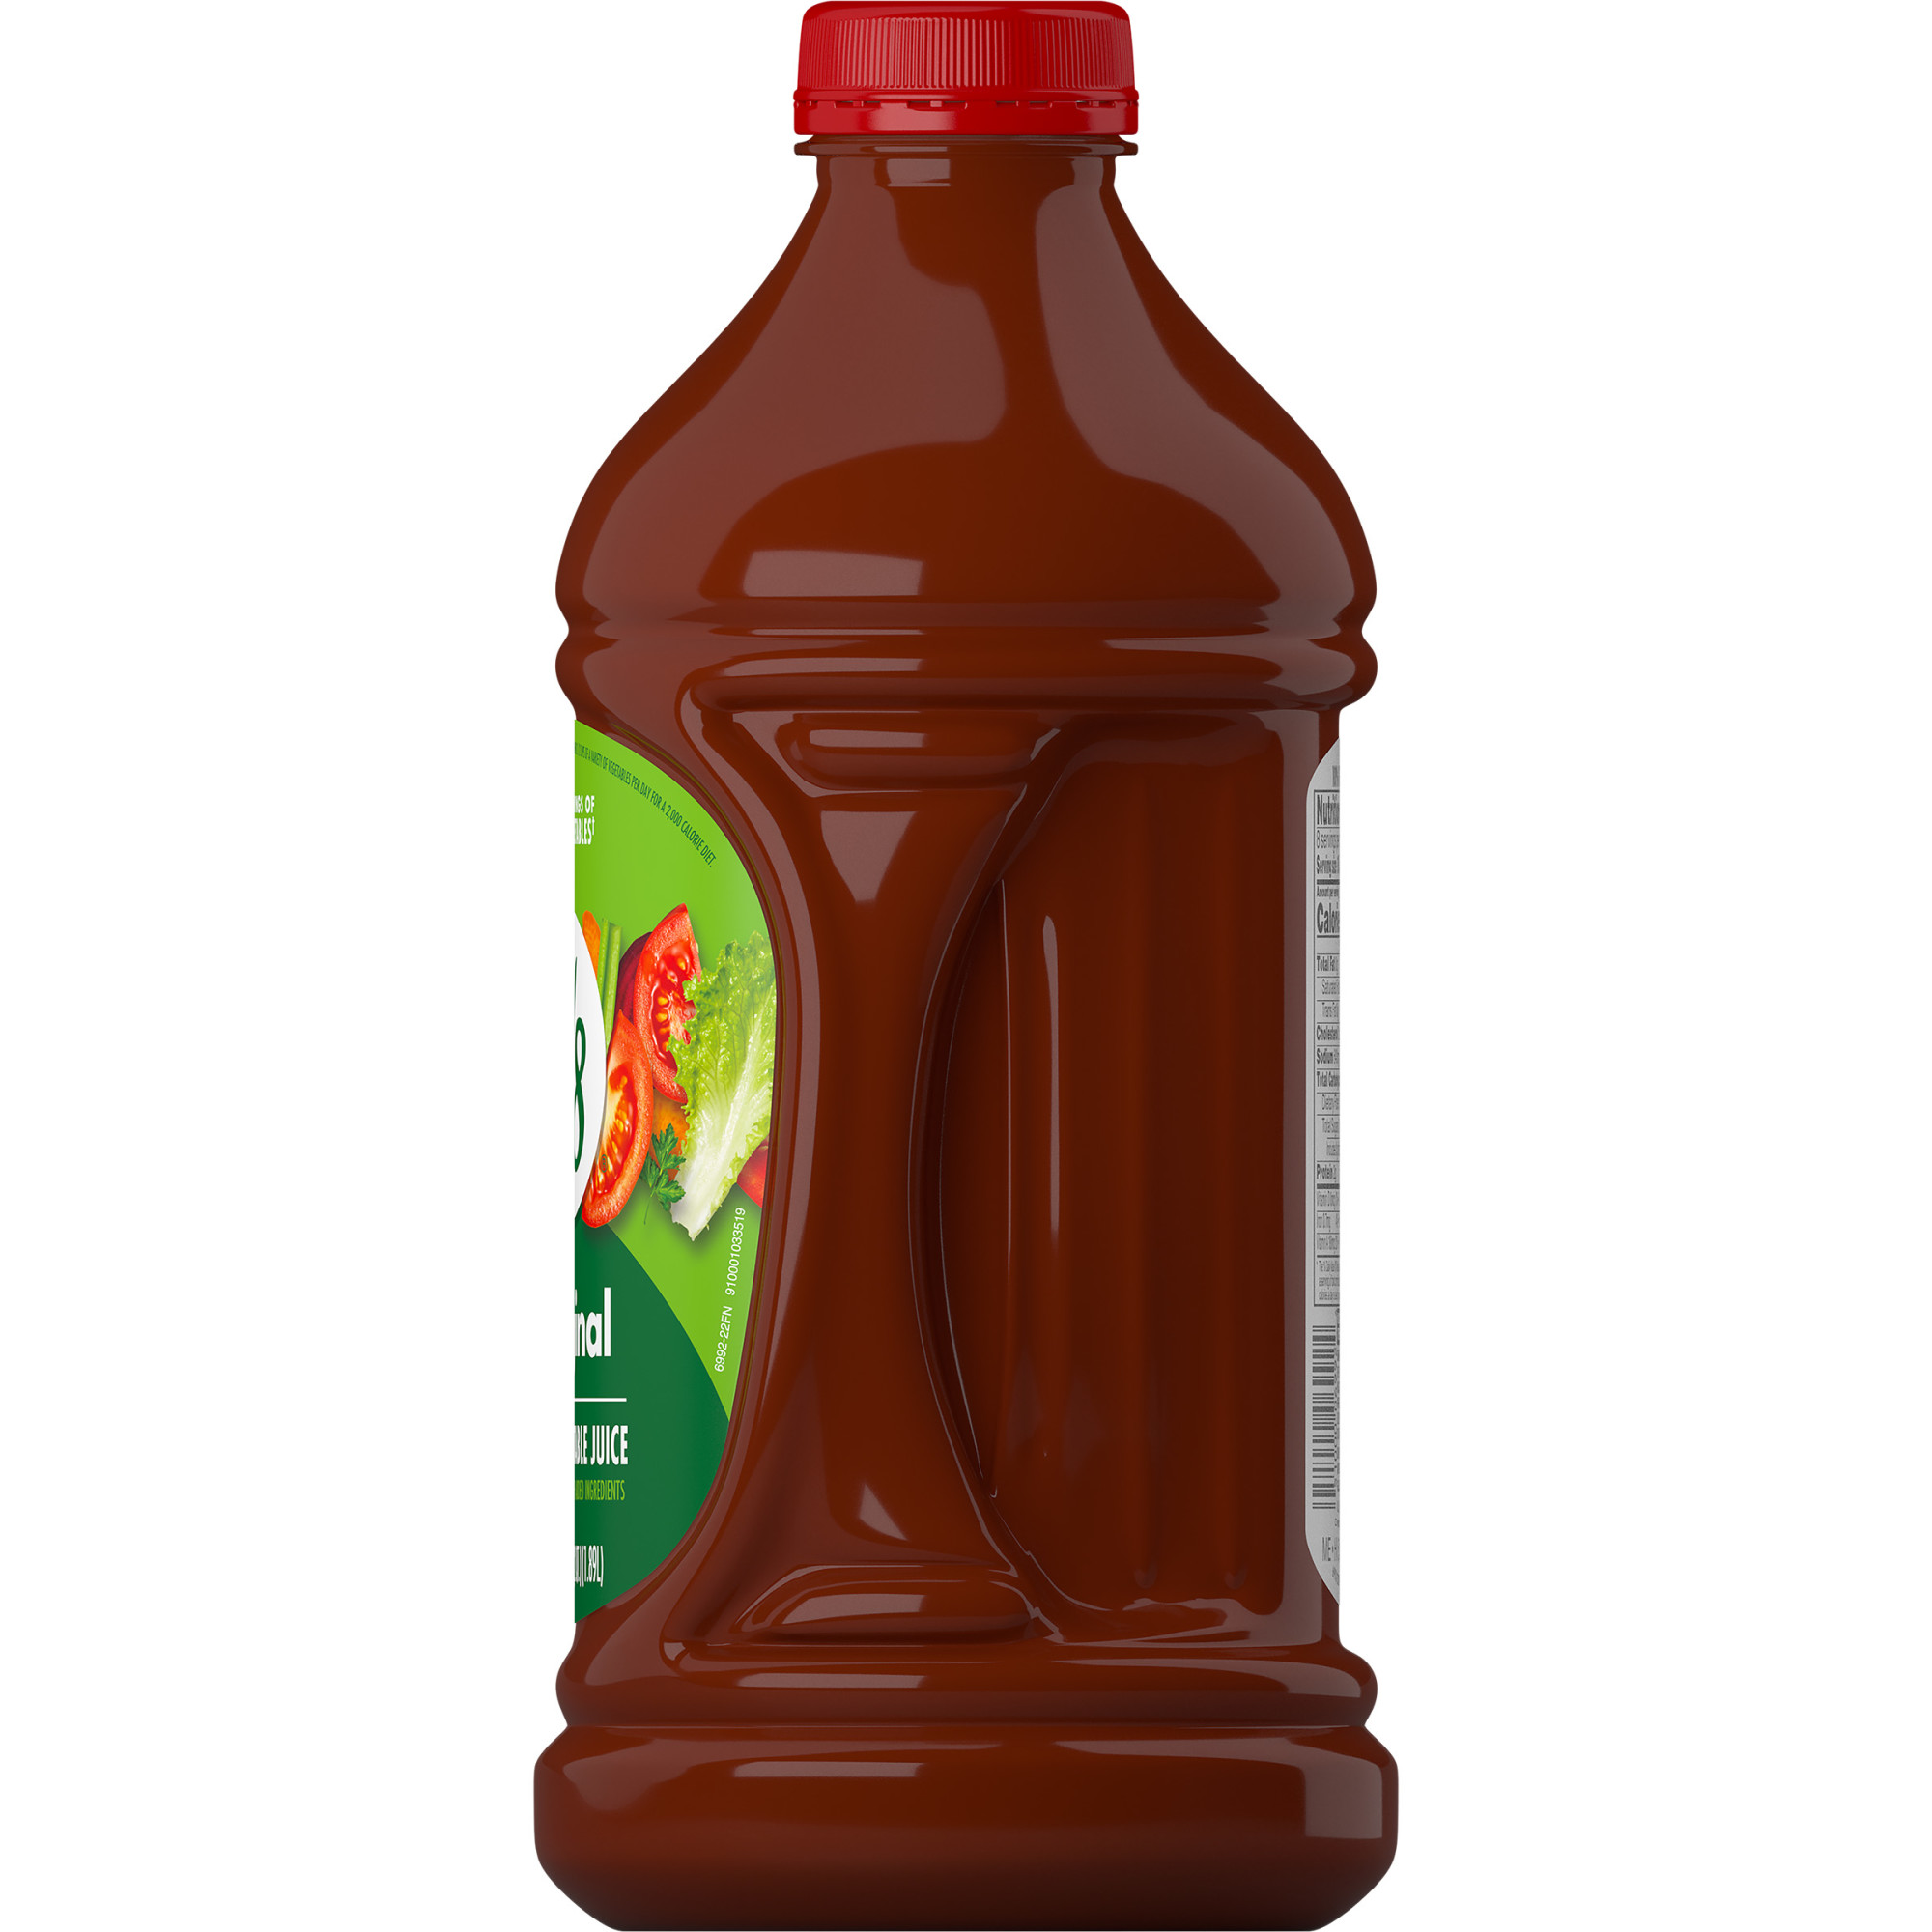 V8 Original 100% Vegetable Juice, 64 fl oz Bottle - image 4 of 7